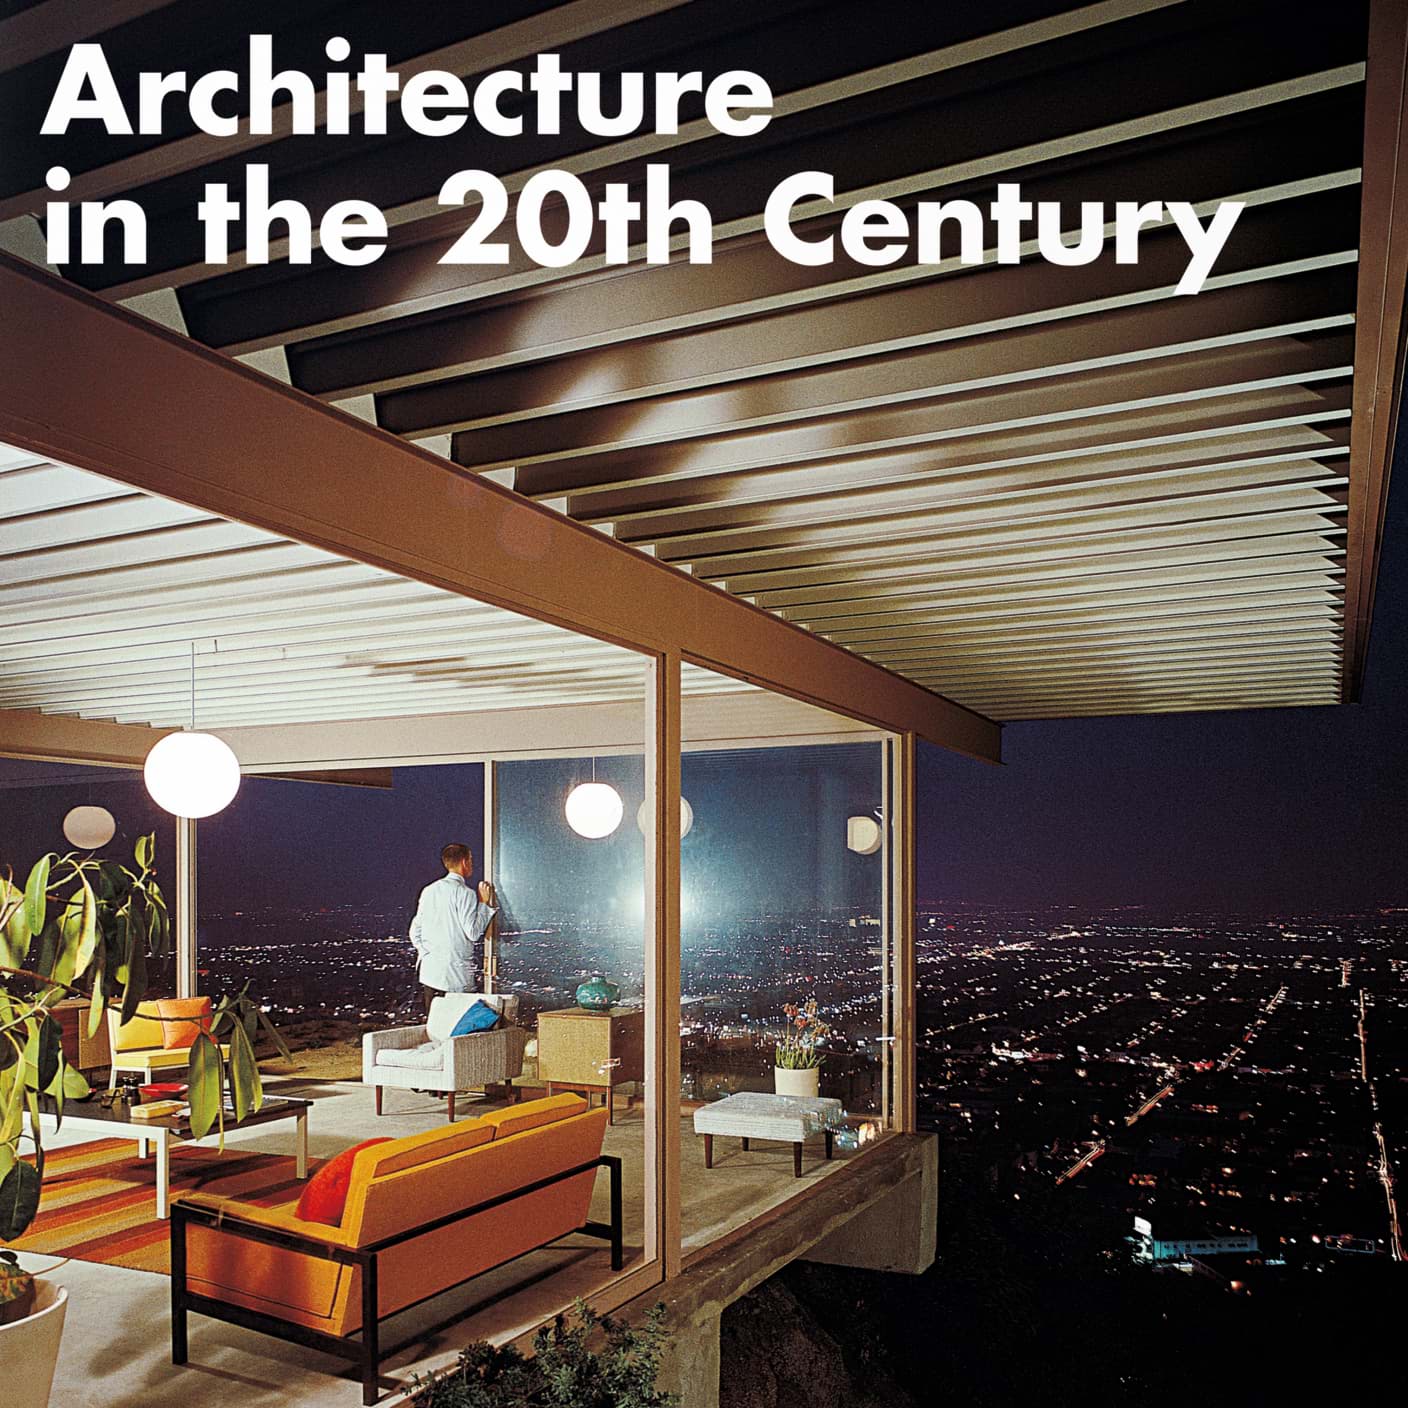 תמונה של אדריכלות במאה העשרים